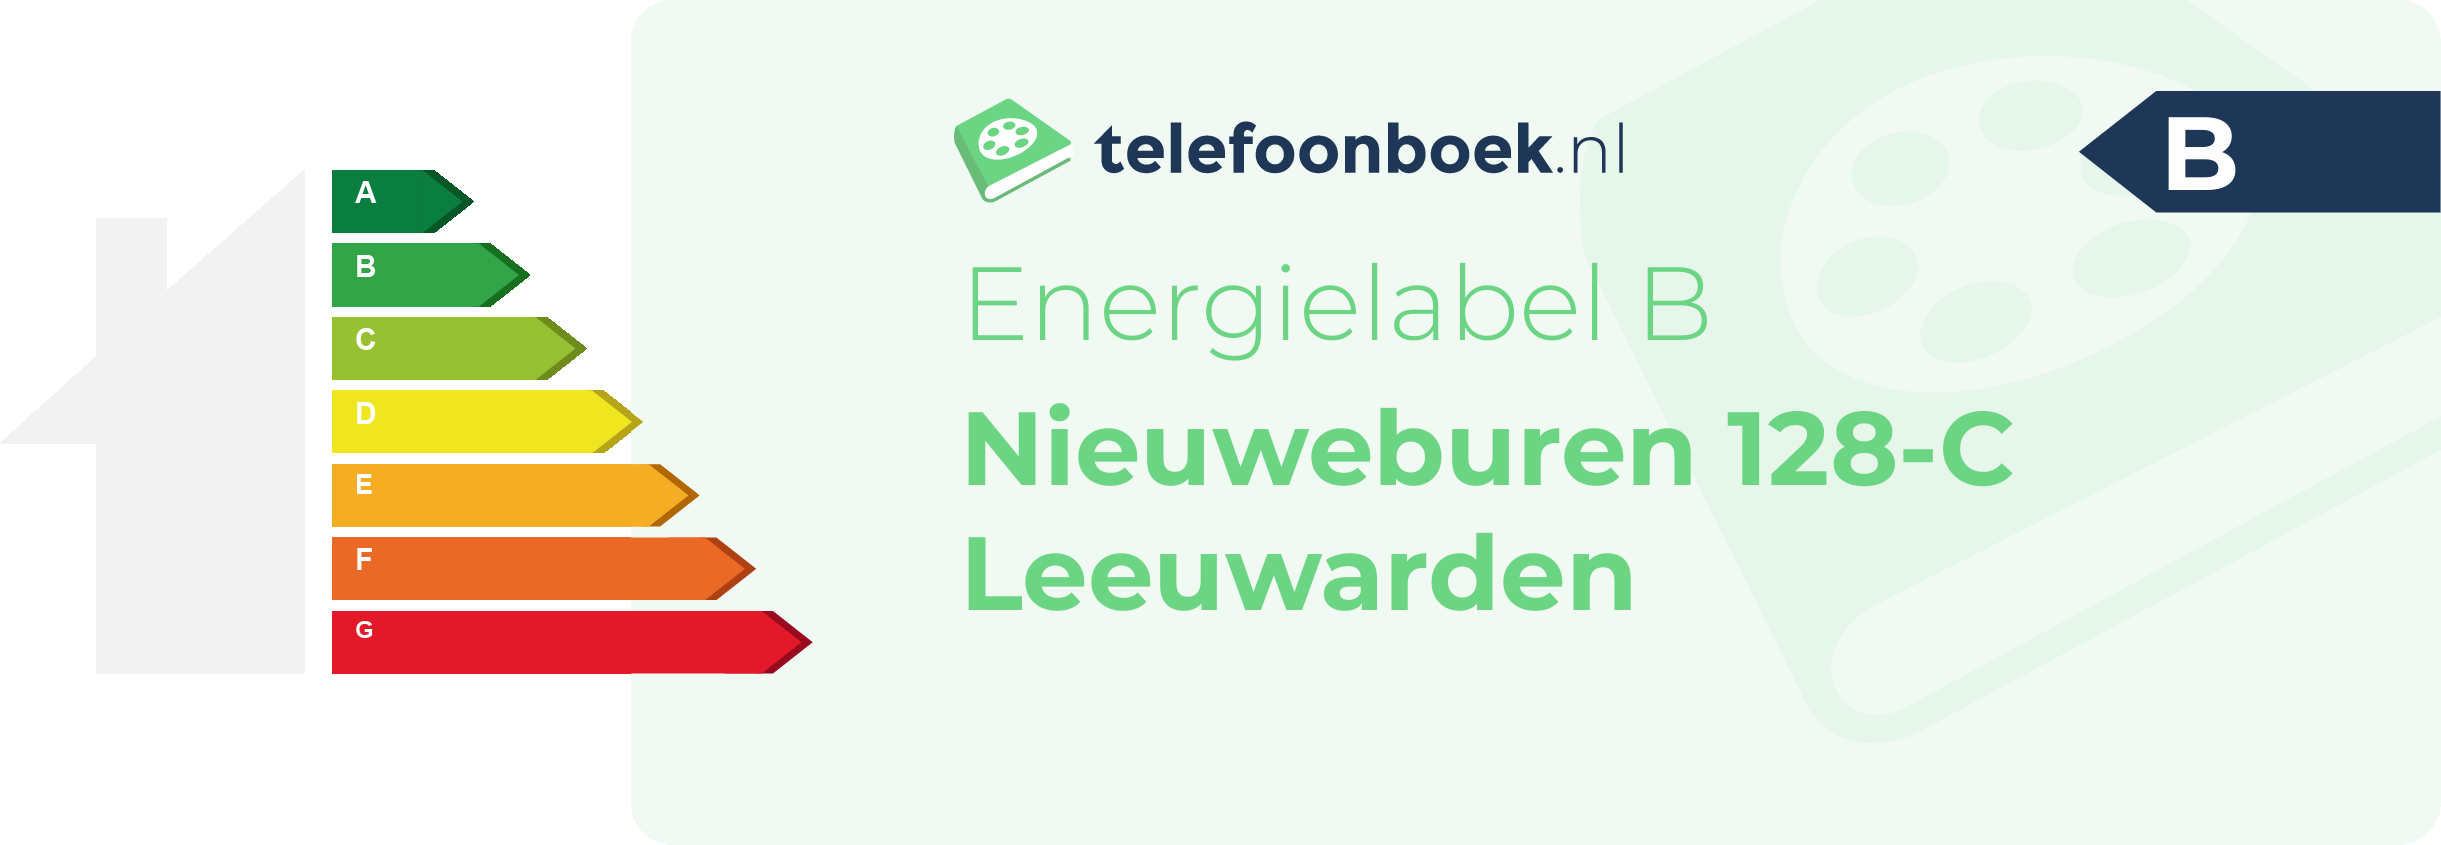 Energielabel Nieuweburen 128-C Leeuwarden